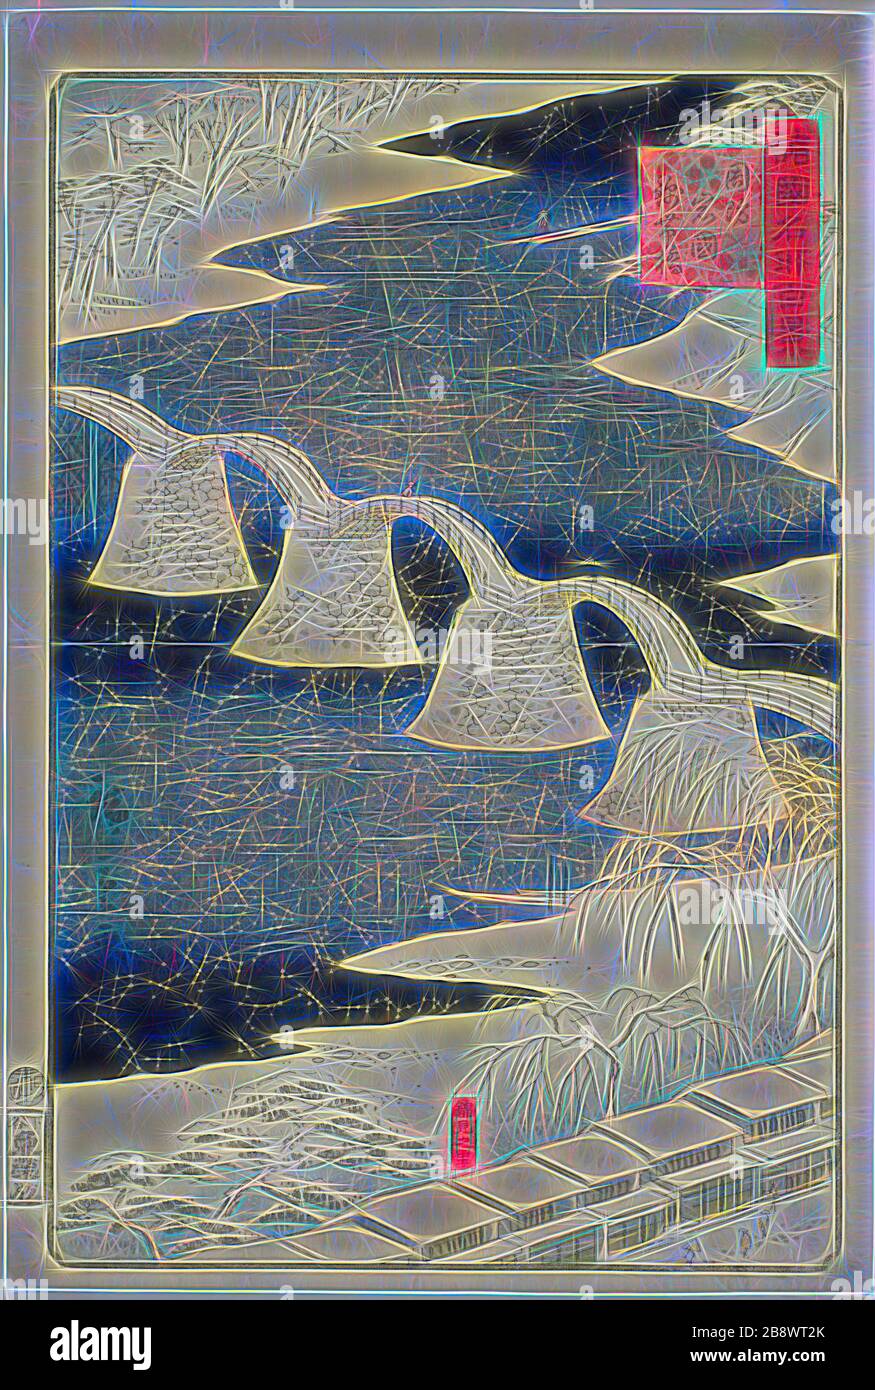 Ponte Kintai a Iwakuni nella provincia di Suo (Suo Iwakuni Kintaibashi), dalla serie cento viste famose nelle varie Province (Shokoku meisho hyakkei), 1859, Utagawa shige II (Shigenobu), giapponese, 1826-1869, Giappone, legno a colori, oban, Reimagawa Hirobon e luce calda di luce solare, Rradiance. Arte classica reinventata con un tocco moderno. La fotografia ispirata al futurismo, che abbraccia l'energia dinamica della tecnologia moderna, del movimento, della velocità e rivoluziona la cultura. Foto Stock